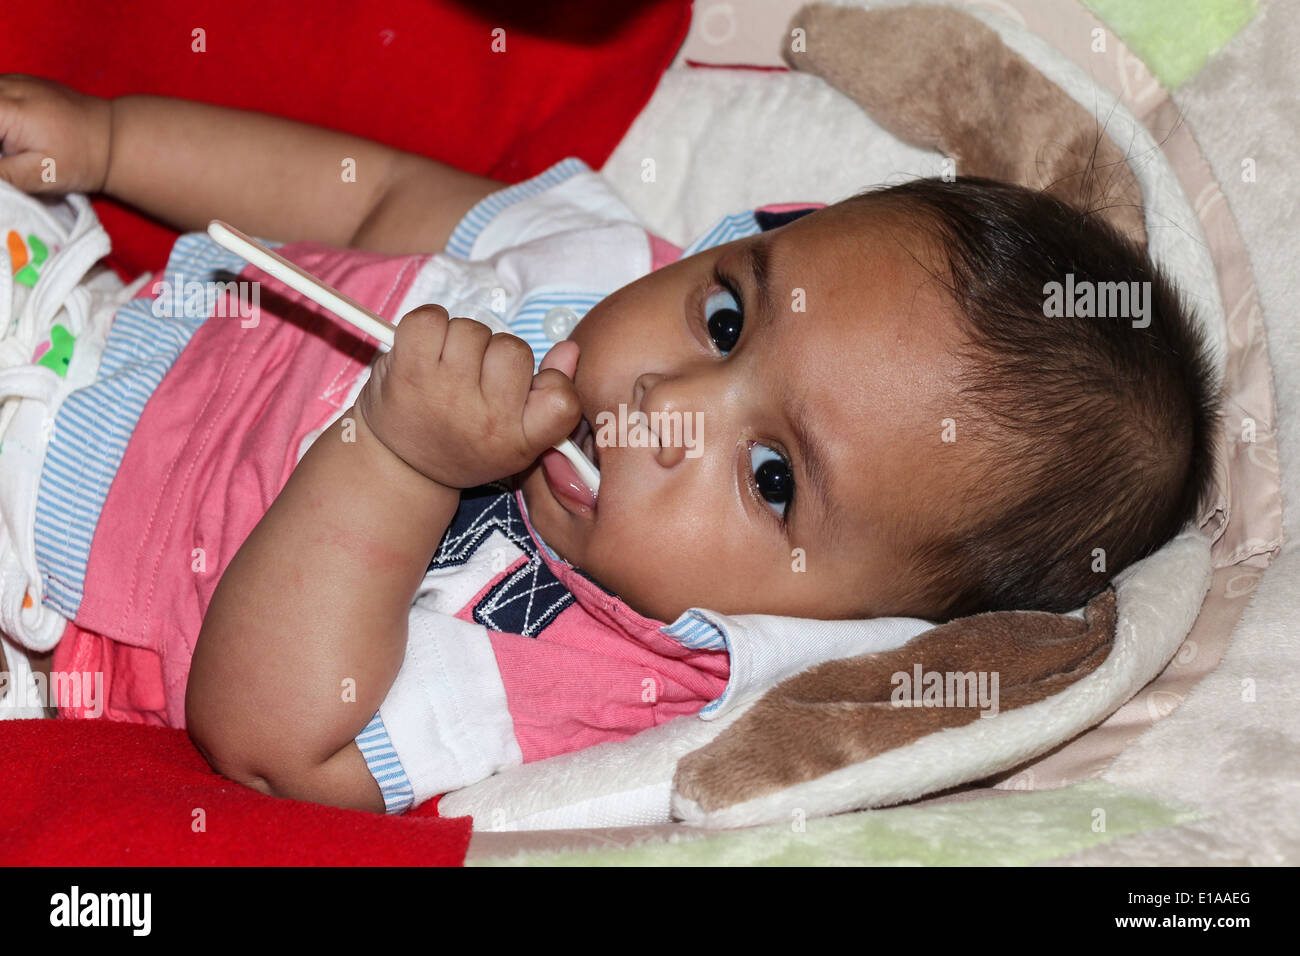 Un petit garçon tenant une cuillère en plastique dans sa bouche tout en étant allongé d'un lit bébé. Le bébé est un petit garçon indien. Banque D'Images